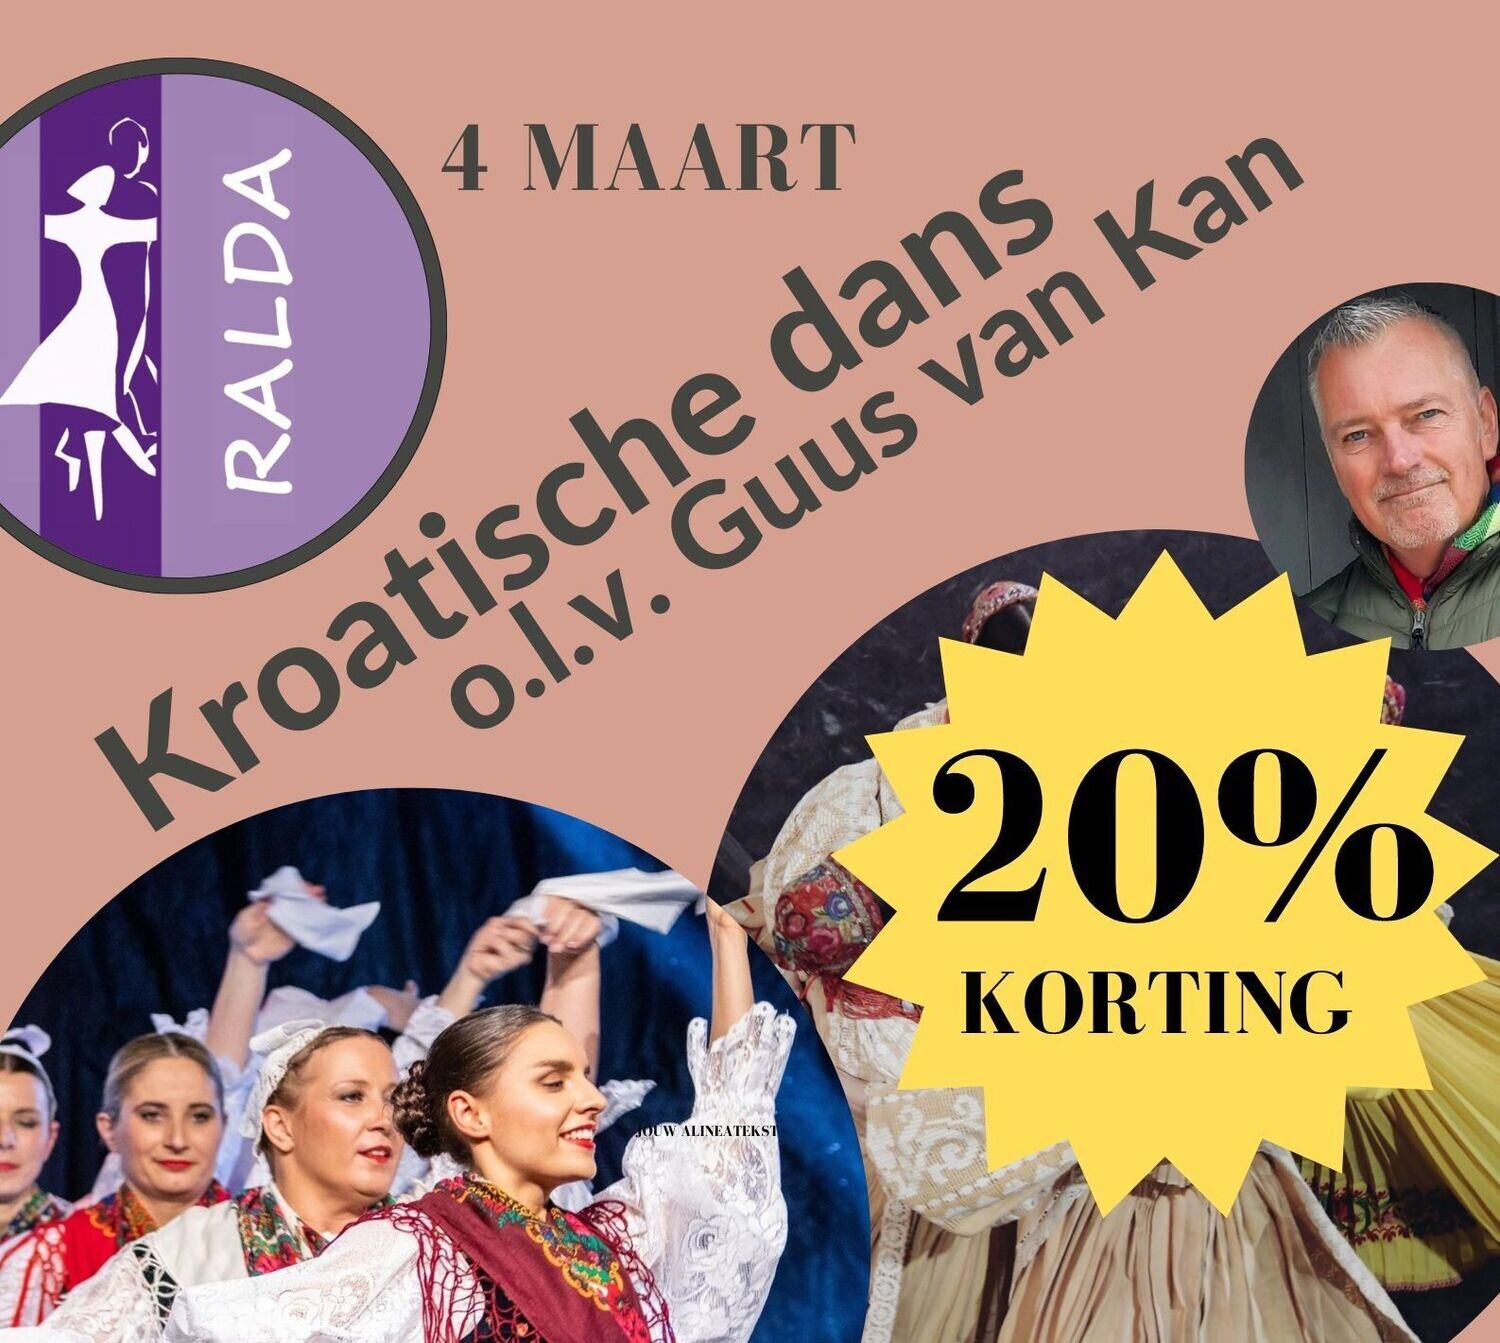 4 maart - Workshop Kroatische dans met Guus van Kan